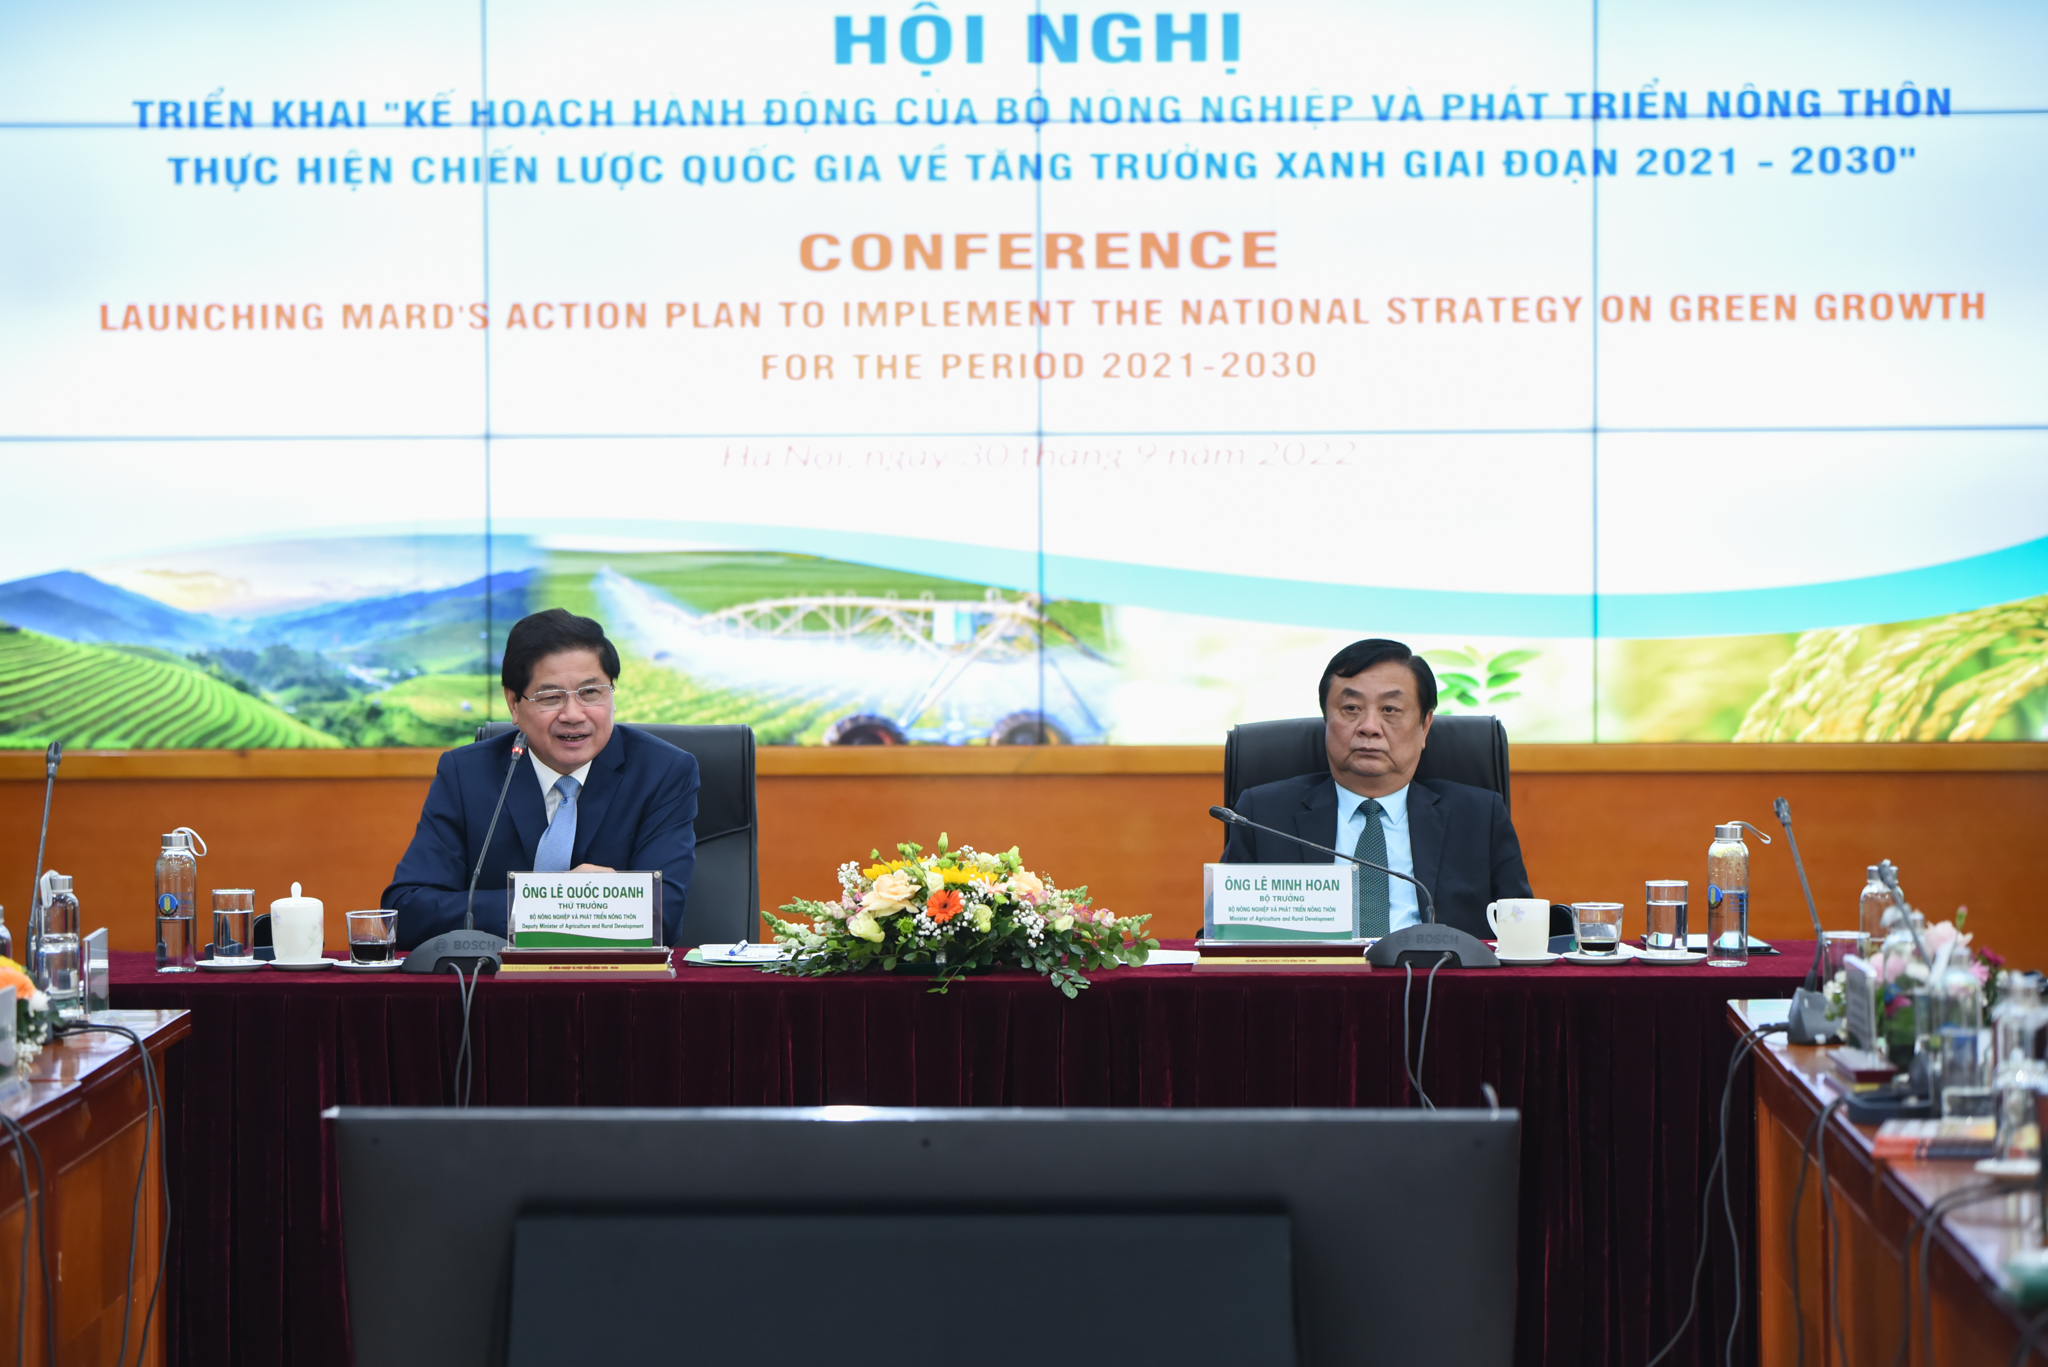 Hội nghị triển khai Kế hoạch hành động của Bộ NN-PTNT thực hiện Chiến lược Quốc gia về tăng trưởng xanh giai đoạn 2021 - 2030 dưới sự chủ trì của Bộ trưởng Lê Minh Hoan và Thứ trưởng Lê Quốc Doanh. Ảnh: Tùng Đinh.